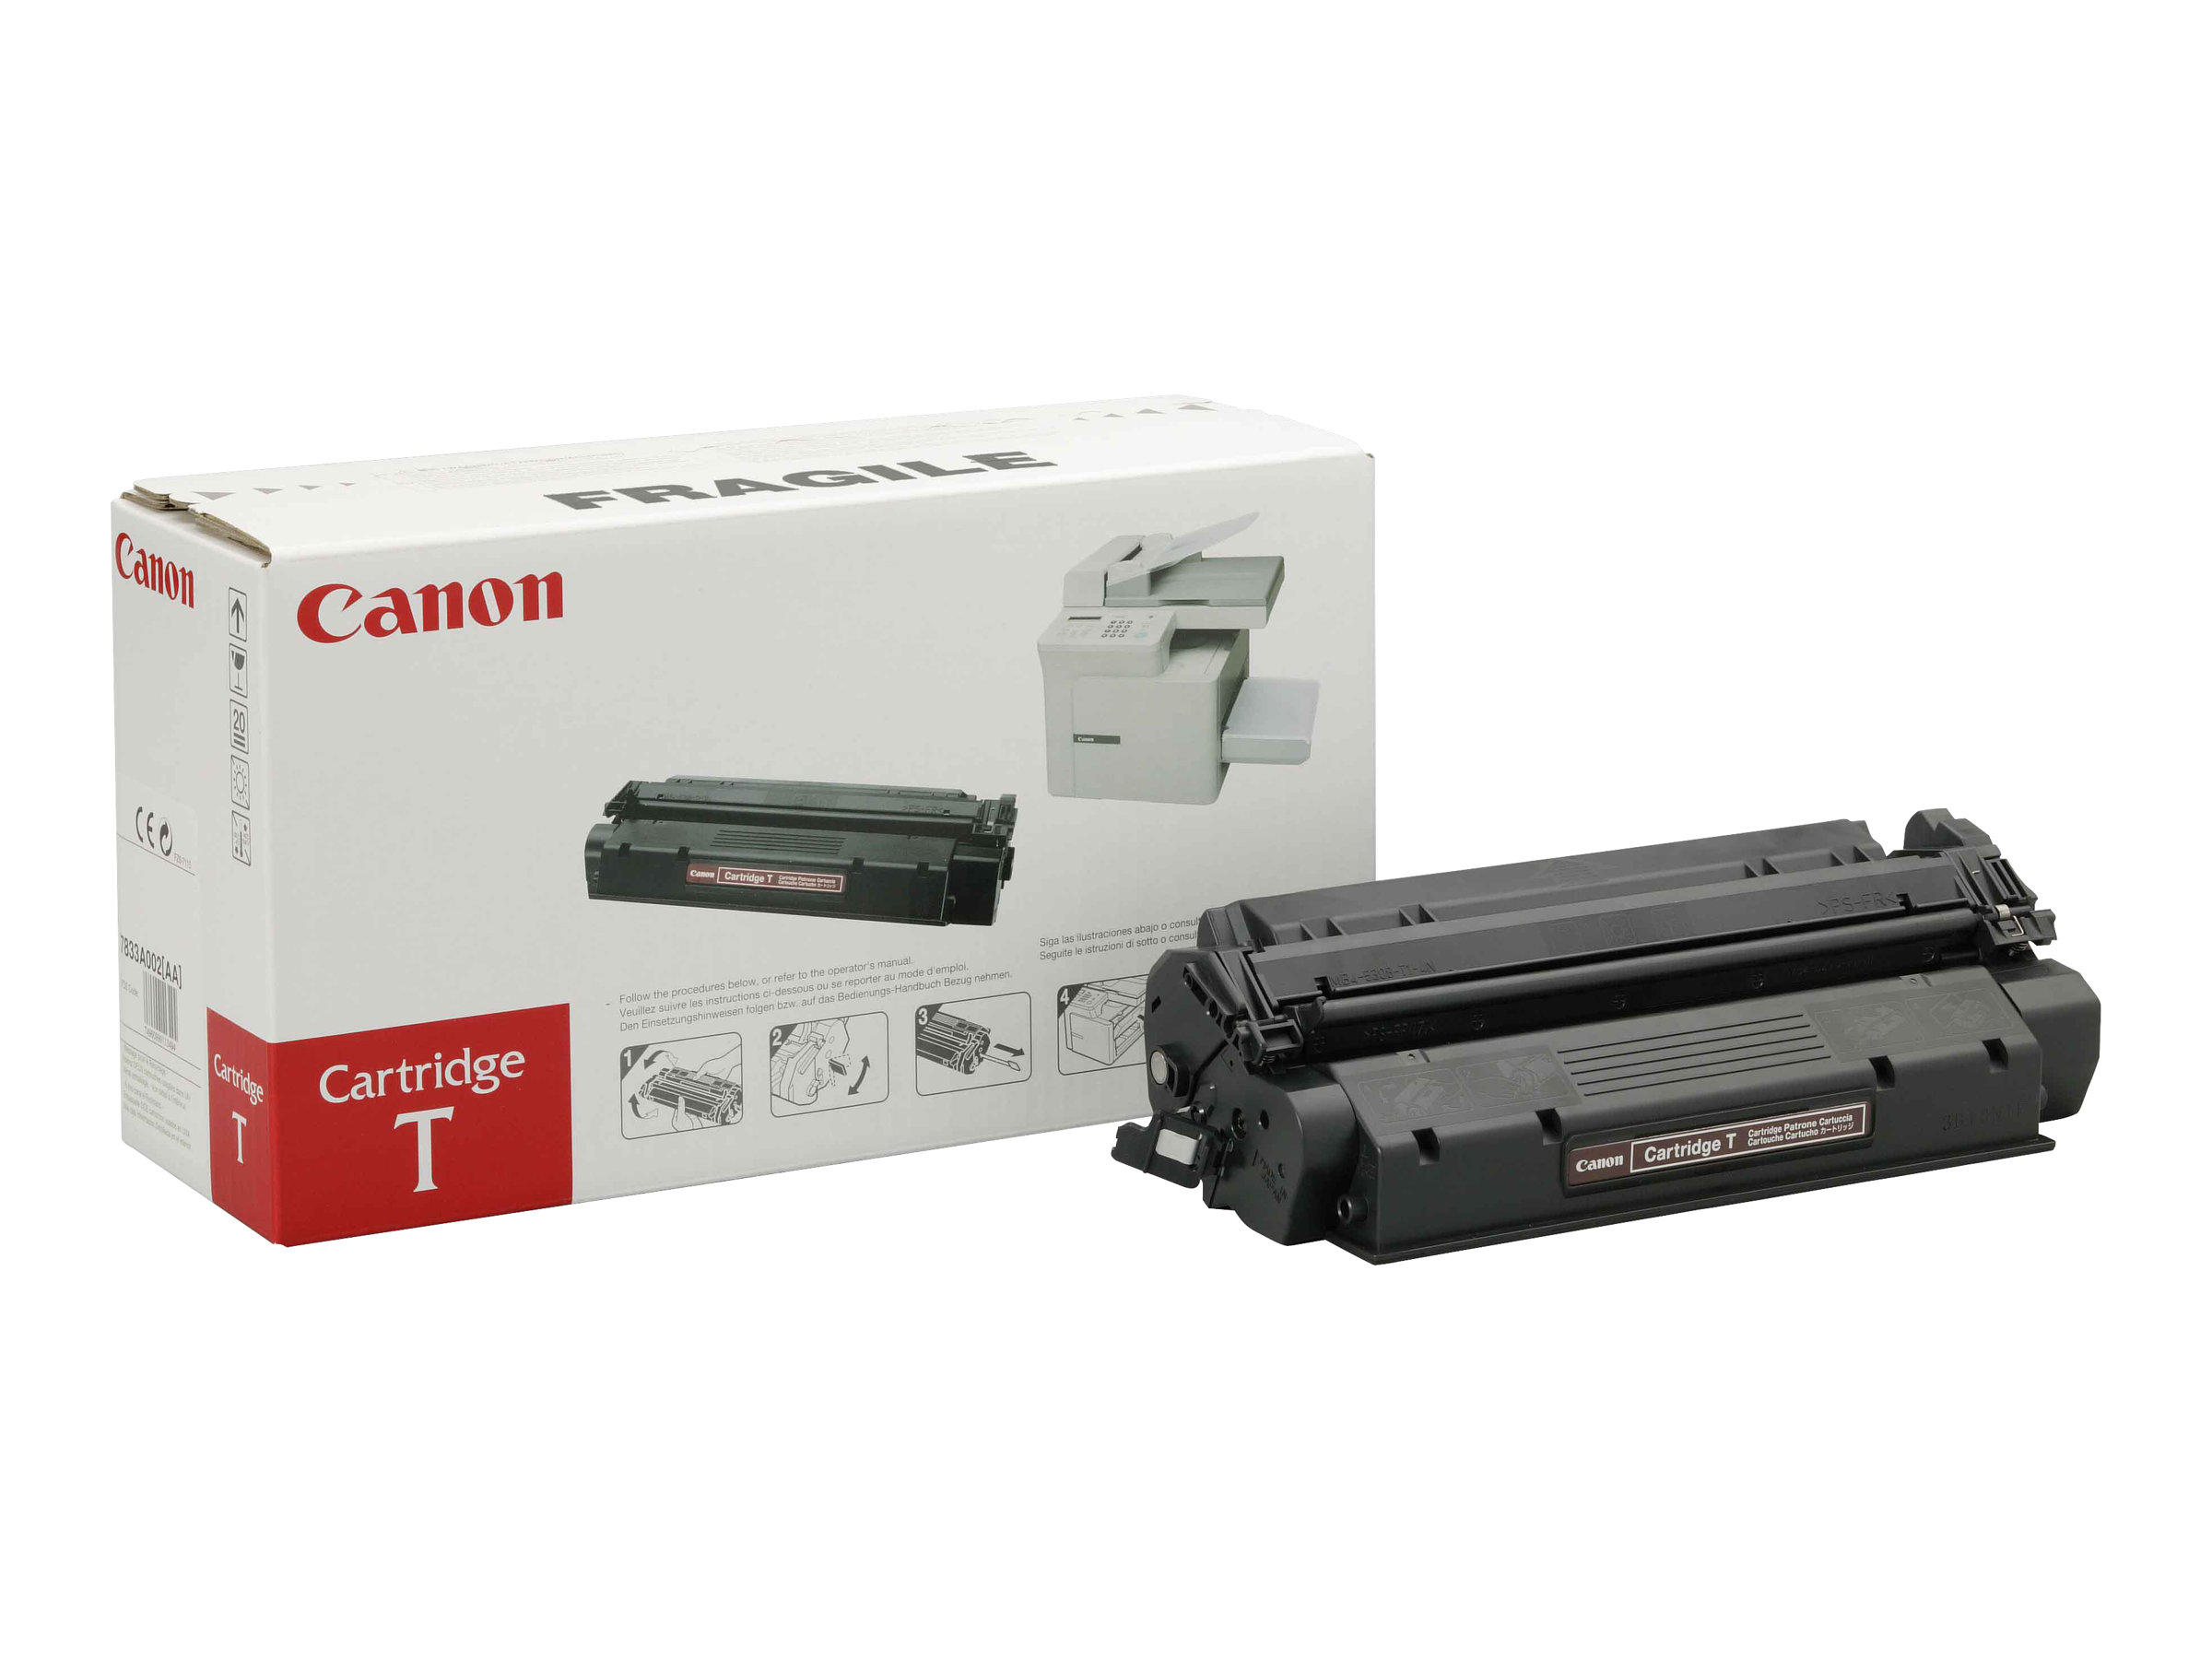 Canon Cartridge T - 7833A002 - Toner schwarz - fr FAX L380 L380S L390 L400; ImageCLASS D320 D340; LASER CLASS 310 510; PCD320 D340